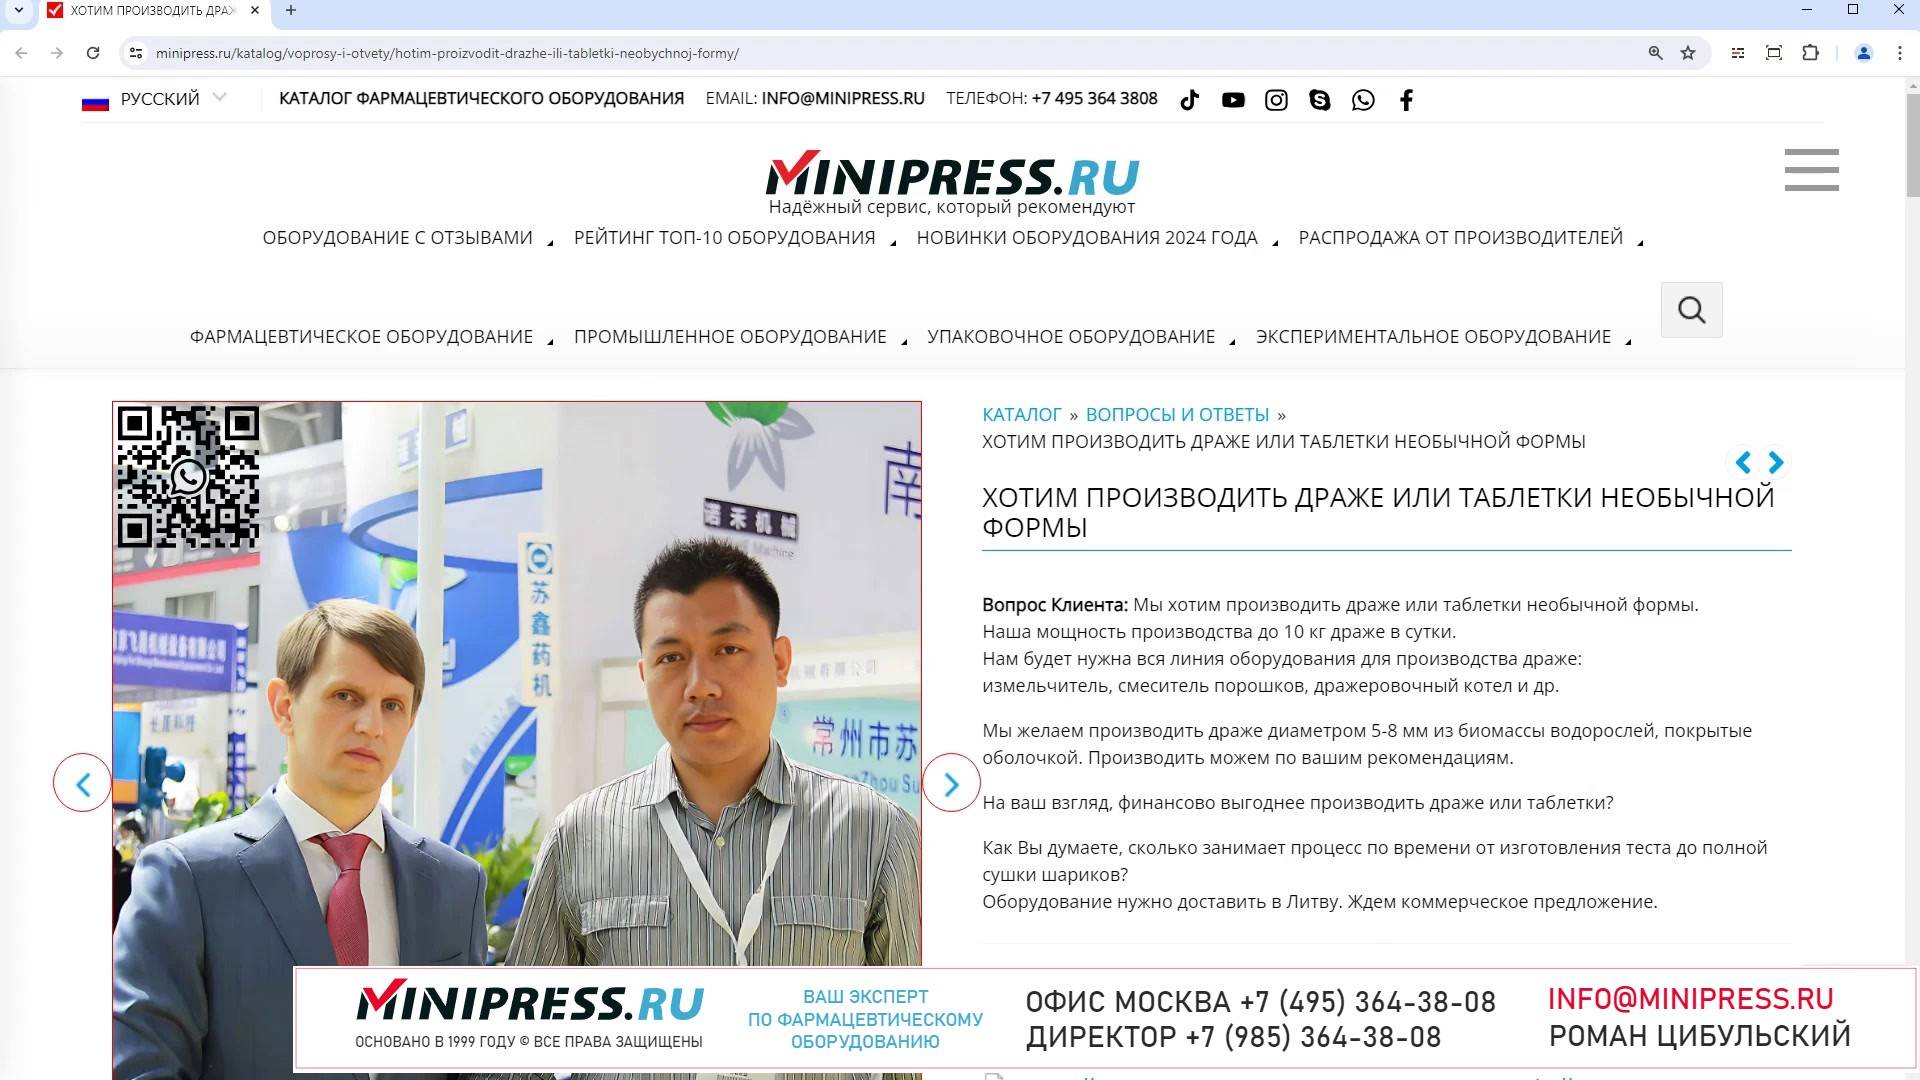 Minipress.ru Хотим производить драже или таблетки необычной формы